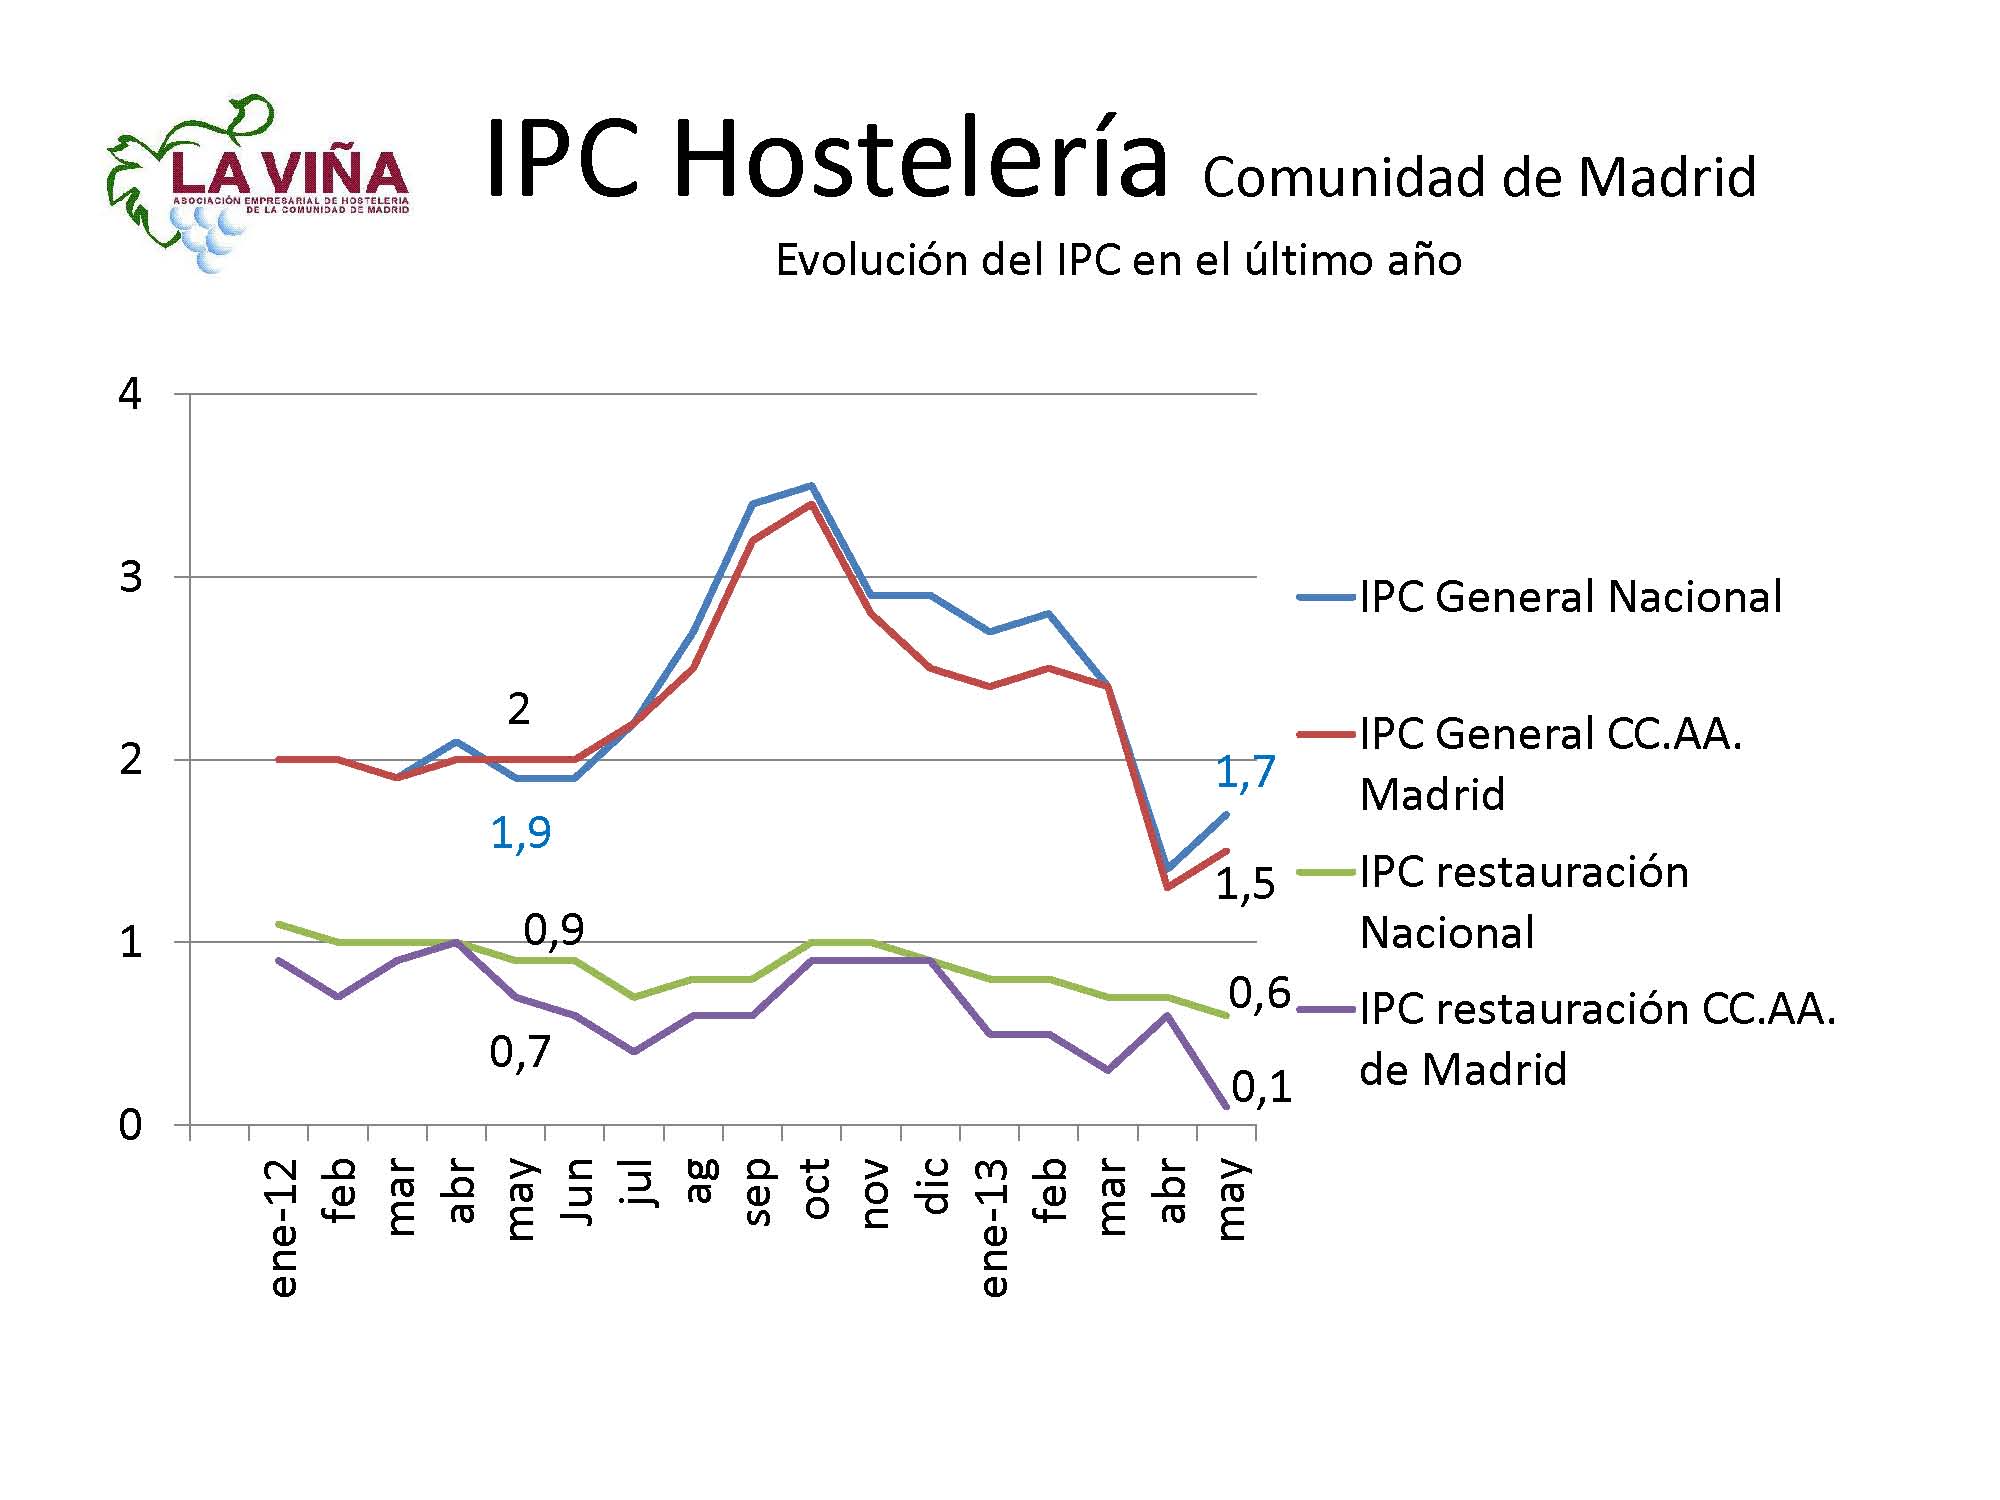 Los precios de bares y rtes. madrileños suben en mayo un 0,1% frente al 1,5% del IPC regional - La Viña